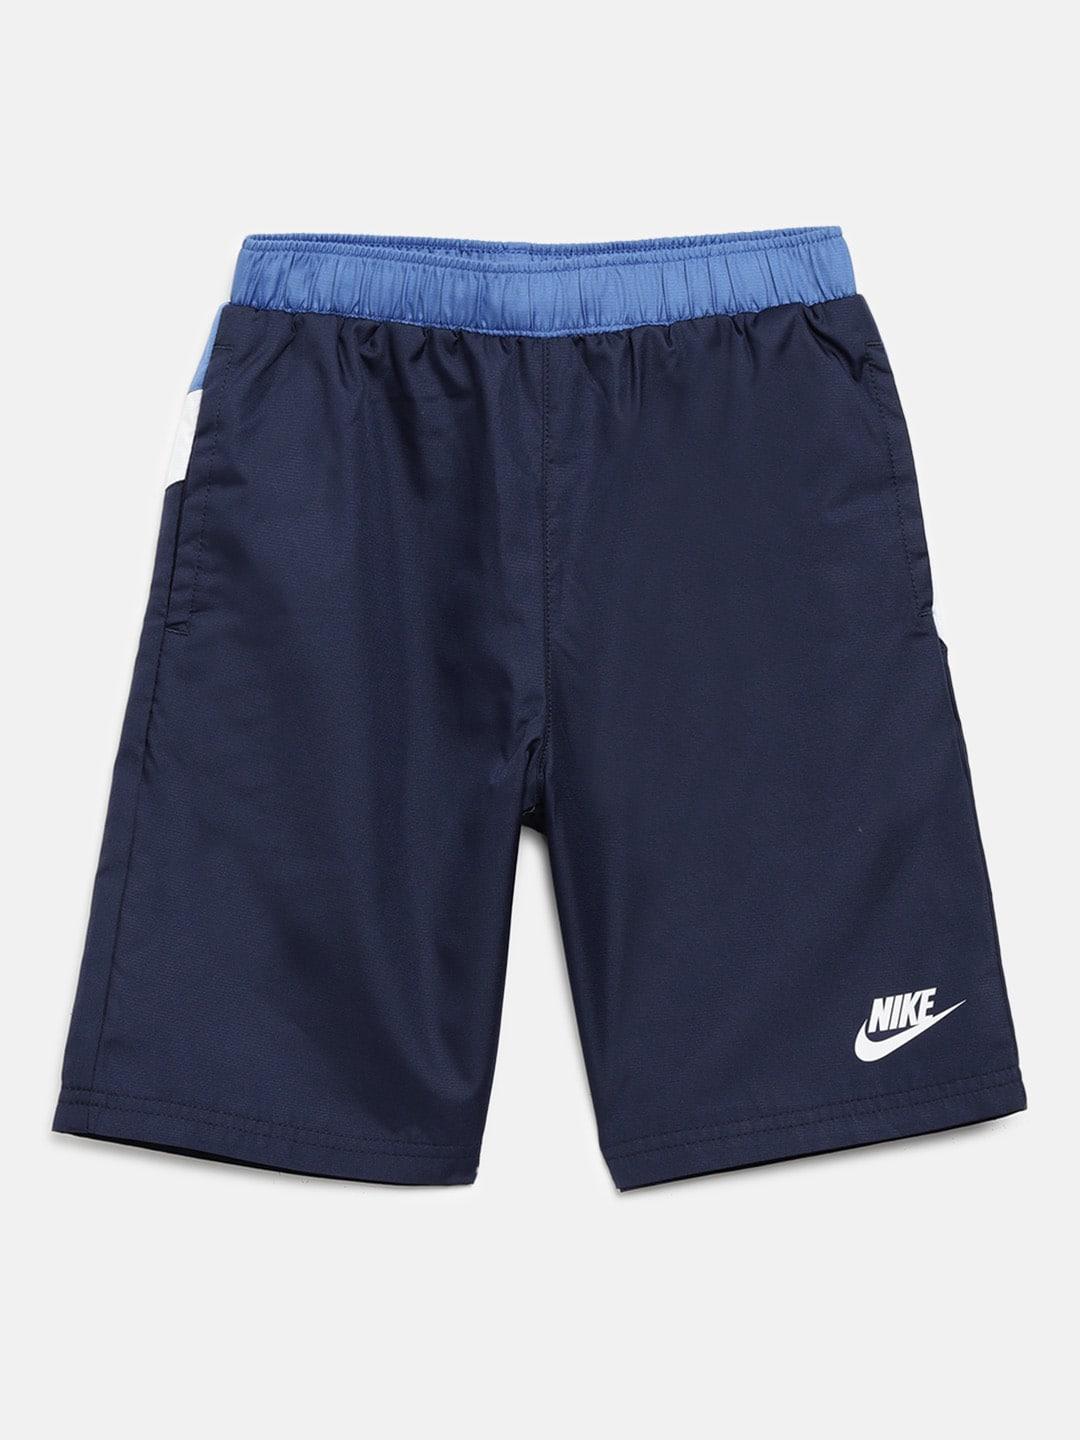 Nike Boys Navy Blue Solid & White Oversized Swoosh Sports Shorts